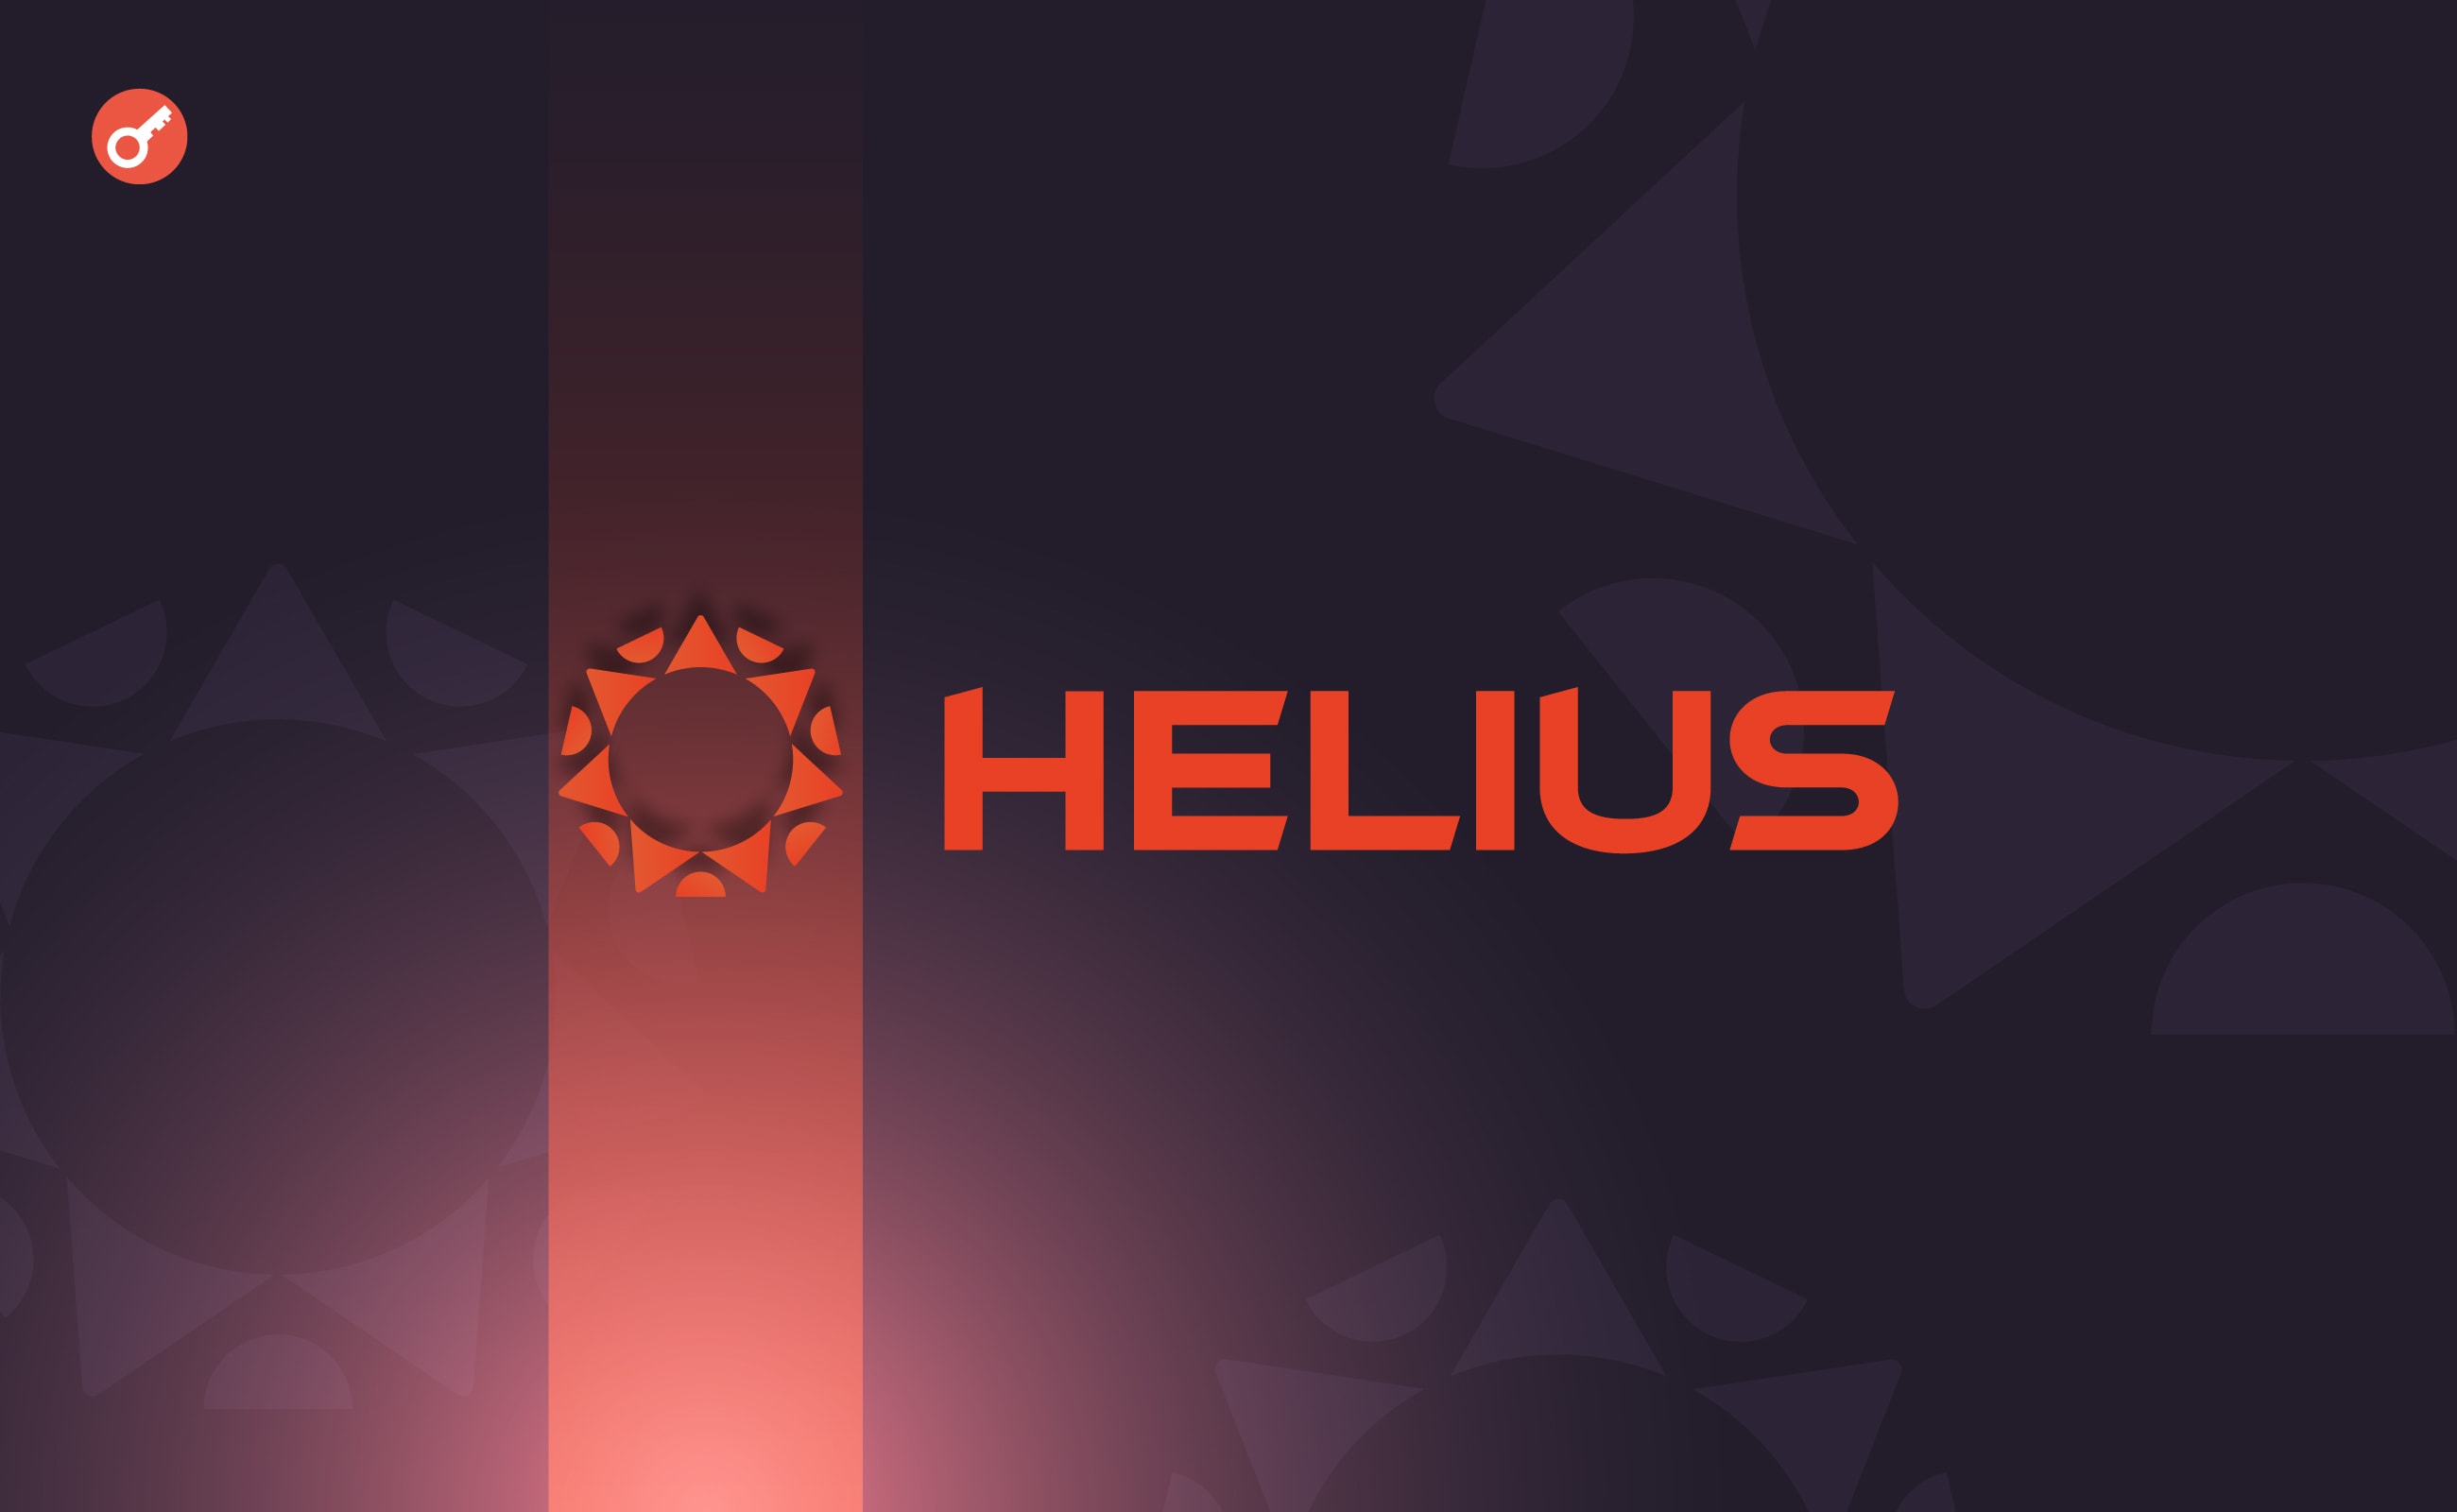 Платформа для розробників Helius залучила $9,5 млн інвестицій. Головний колаж новини.